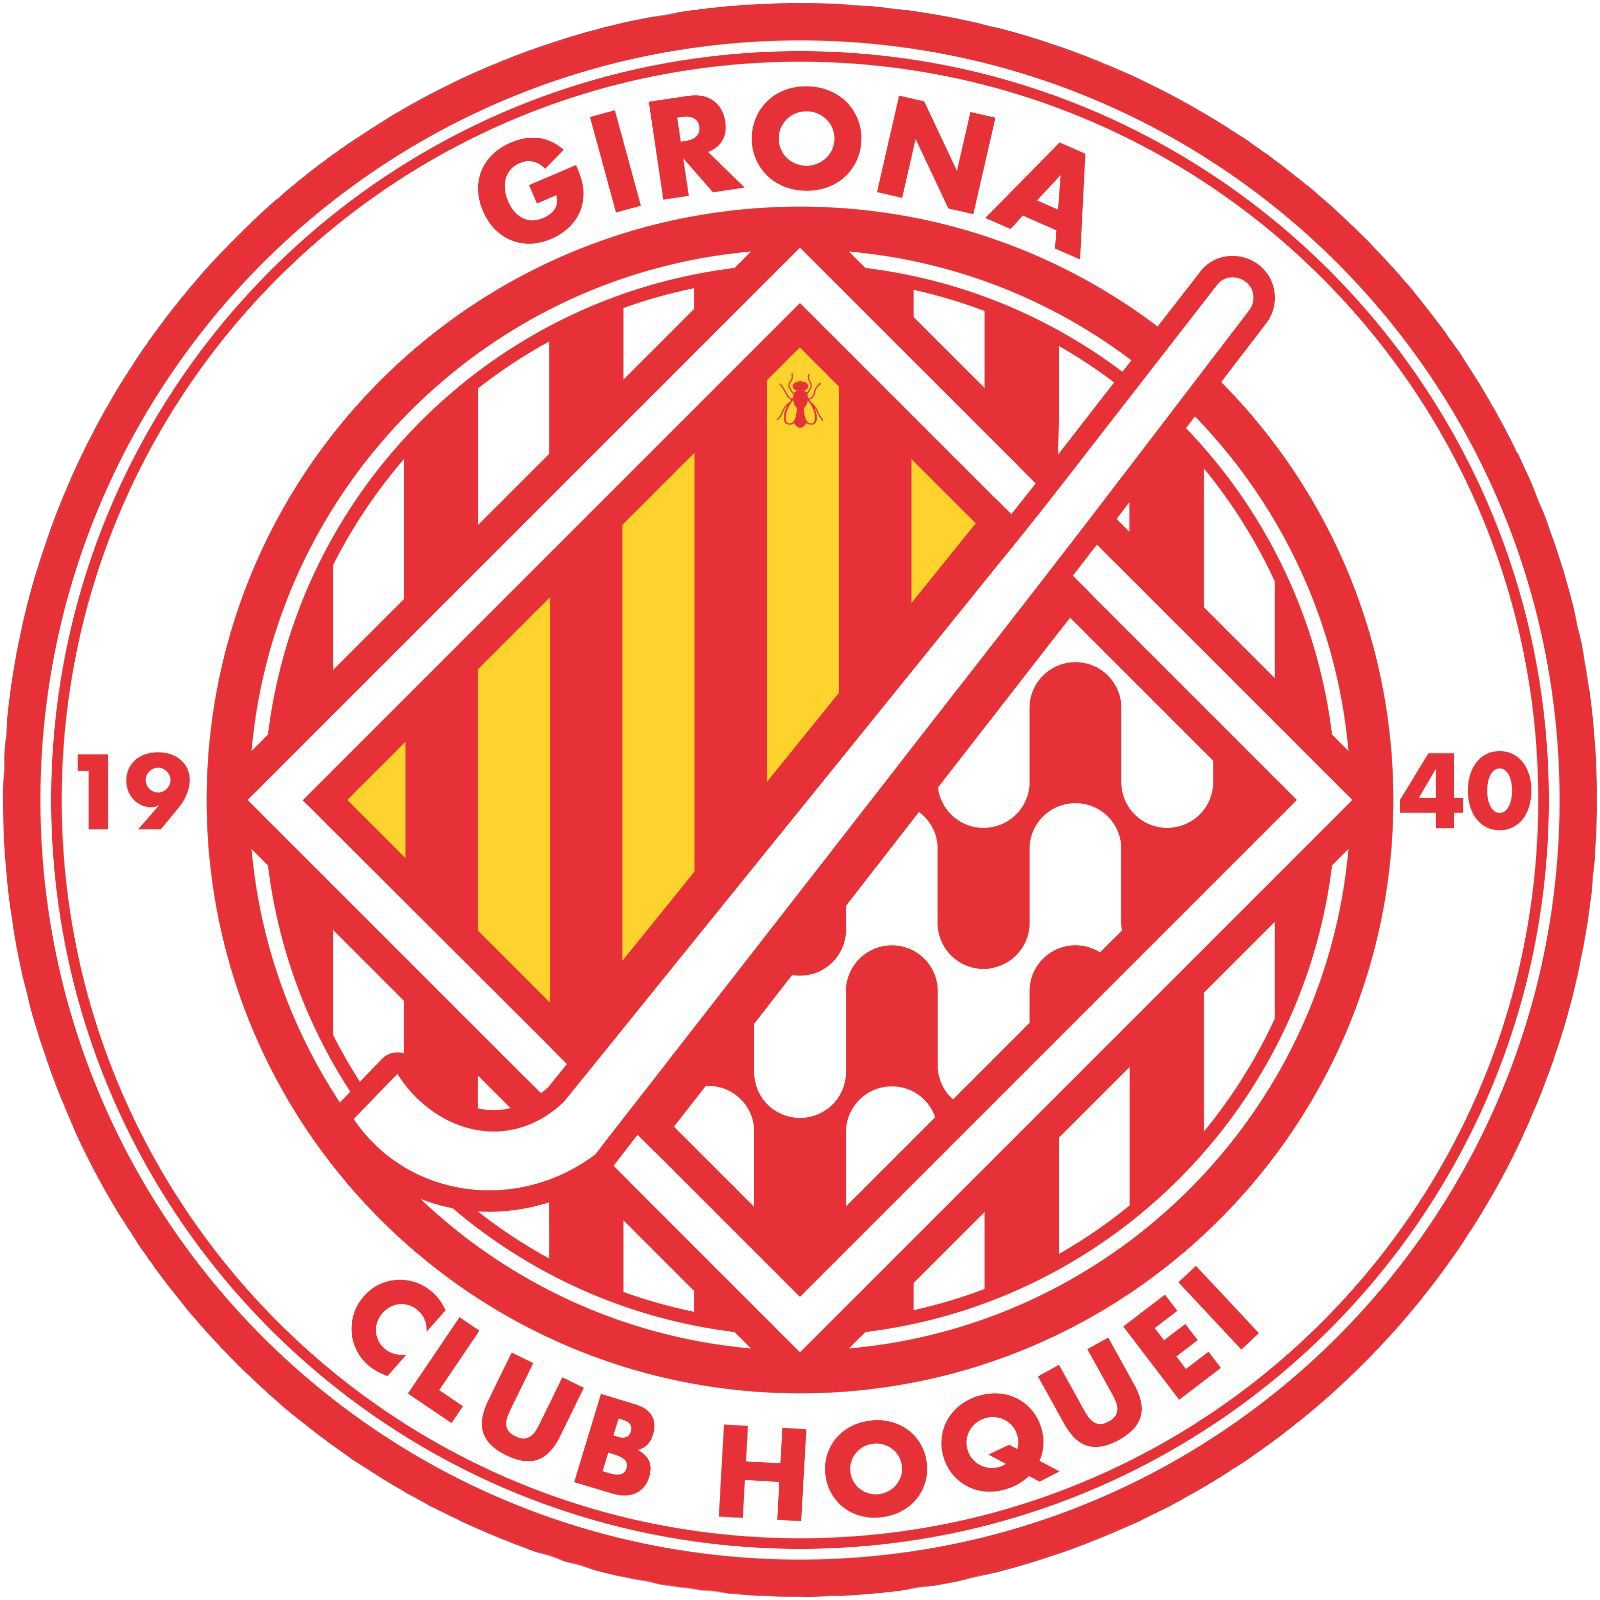 Girona Club Hoquei